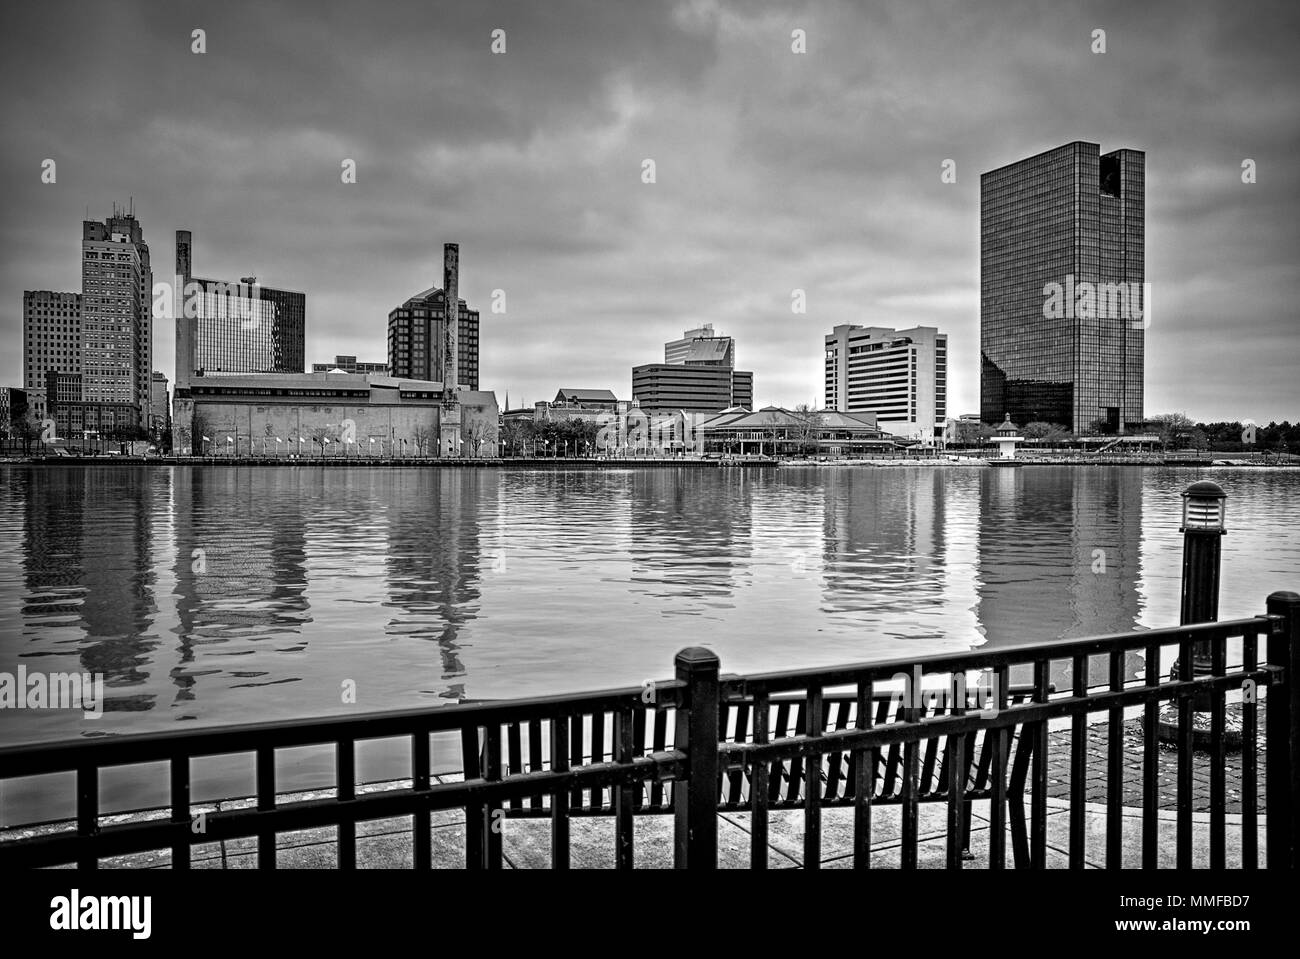 Einen Panoramablick über die Innenstadt von Toledo Ohio Skyline aus über dem Maumee River ein beliebtes Restaurant mit einem fertiger Backstein Boardwalk. Stockfoto